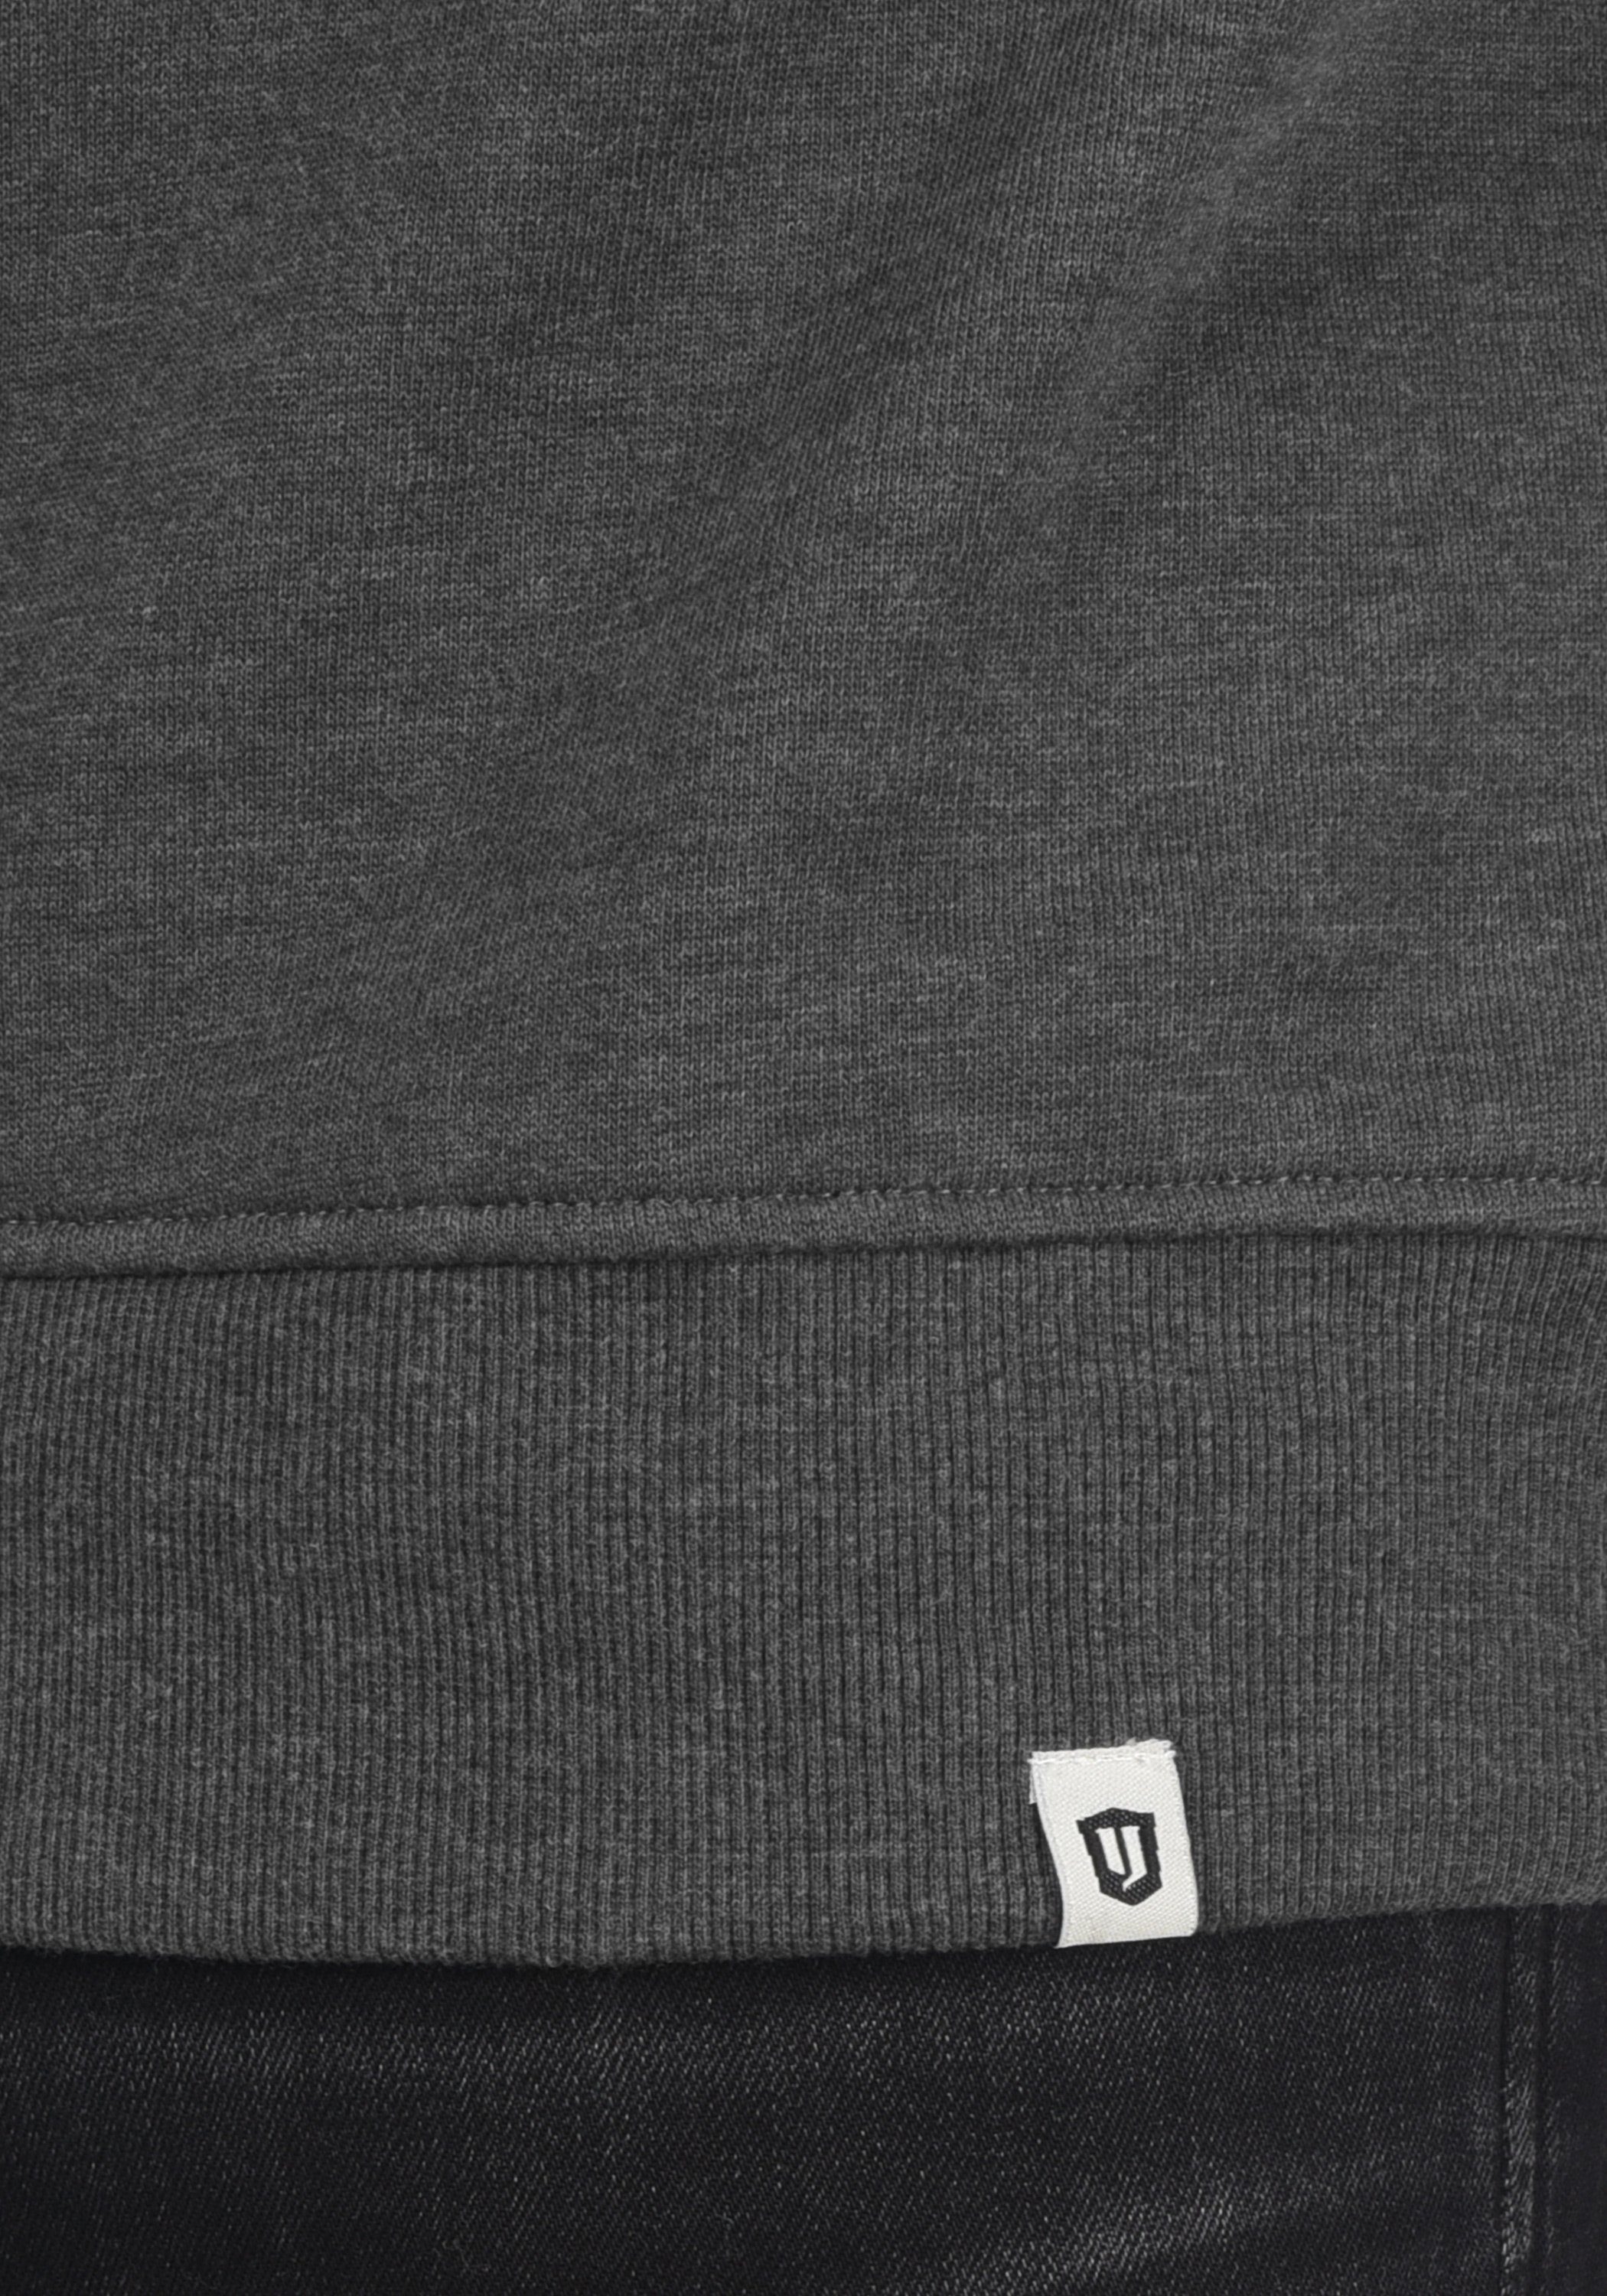 Sweatshirt Sweatpulli Grey IDGalilero Mix Indicode (914)